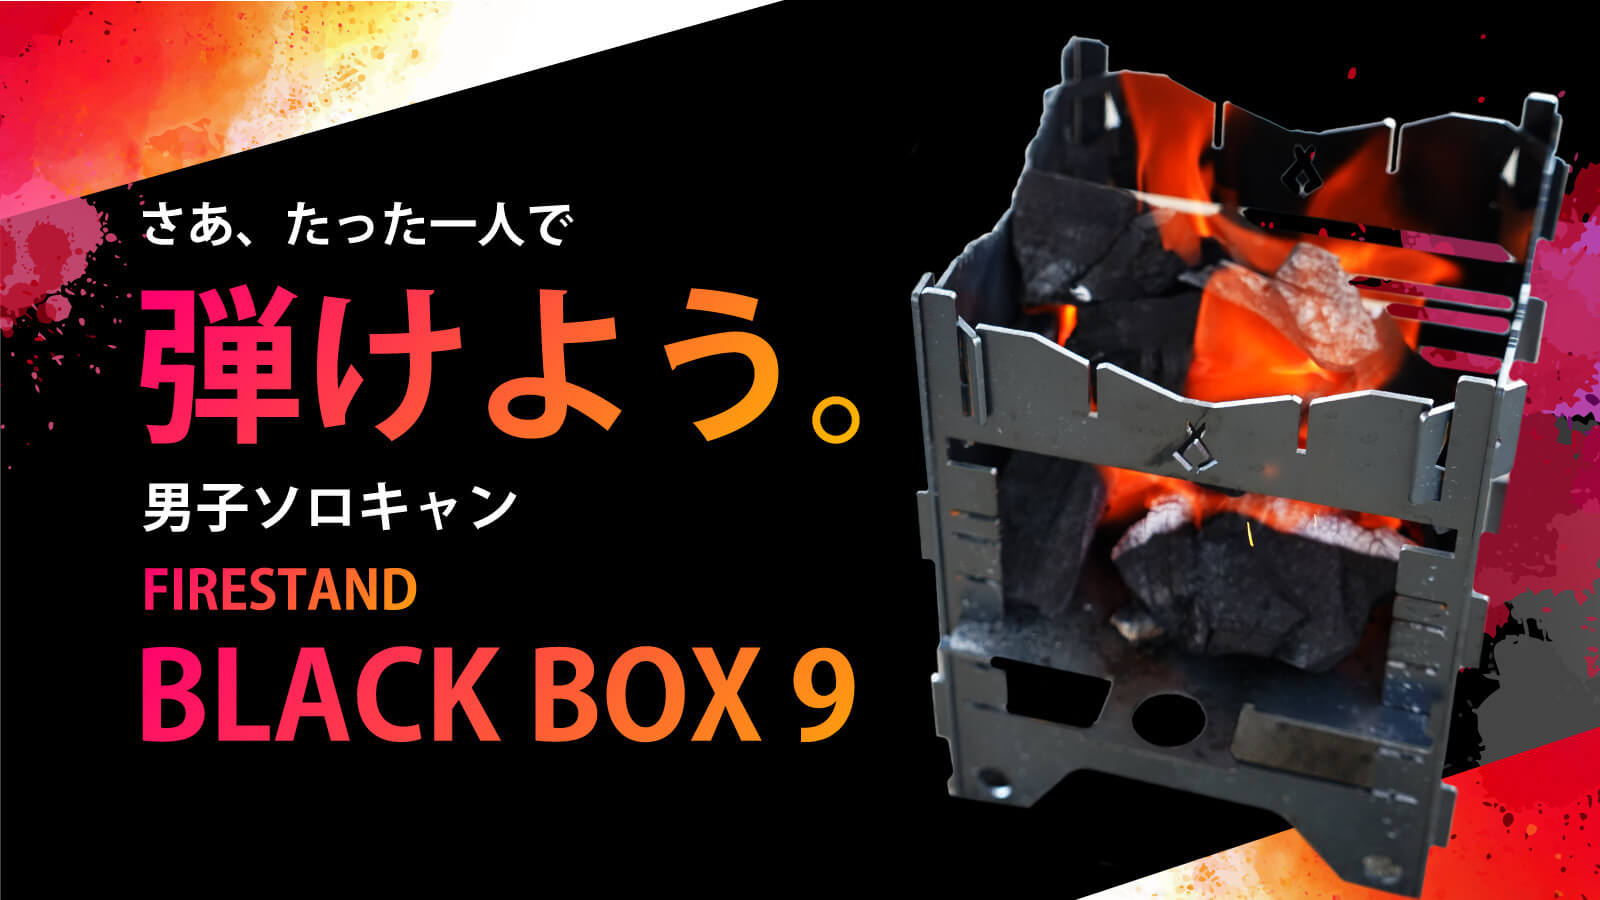 ファイヤースタンド「BLACK BOX 9」